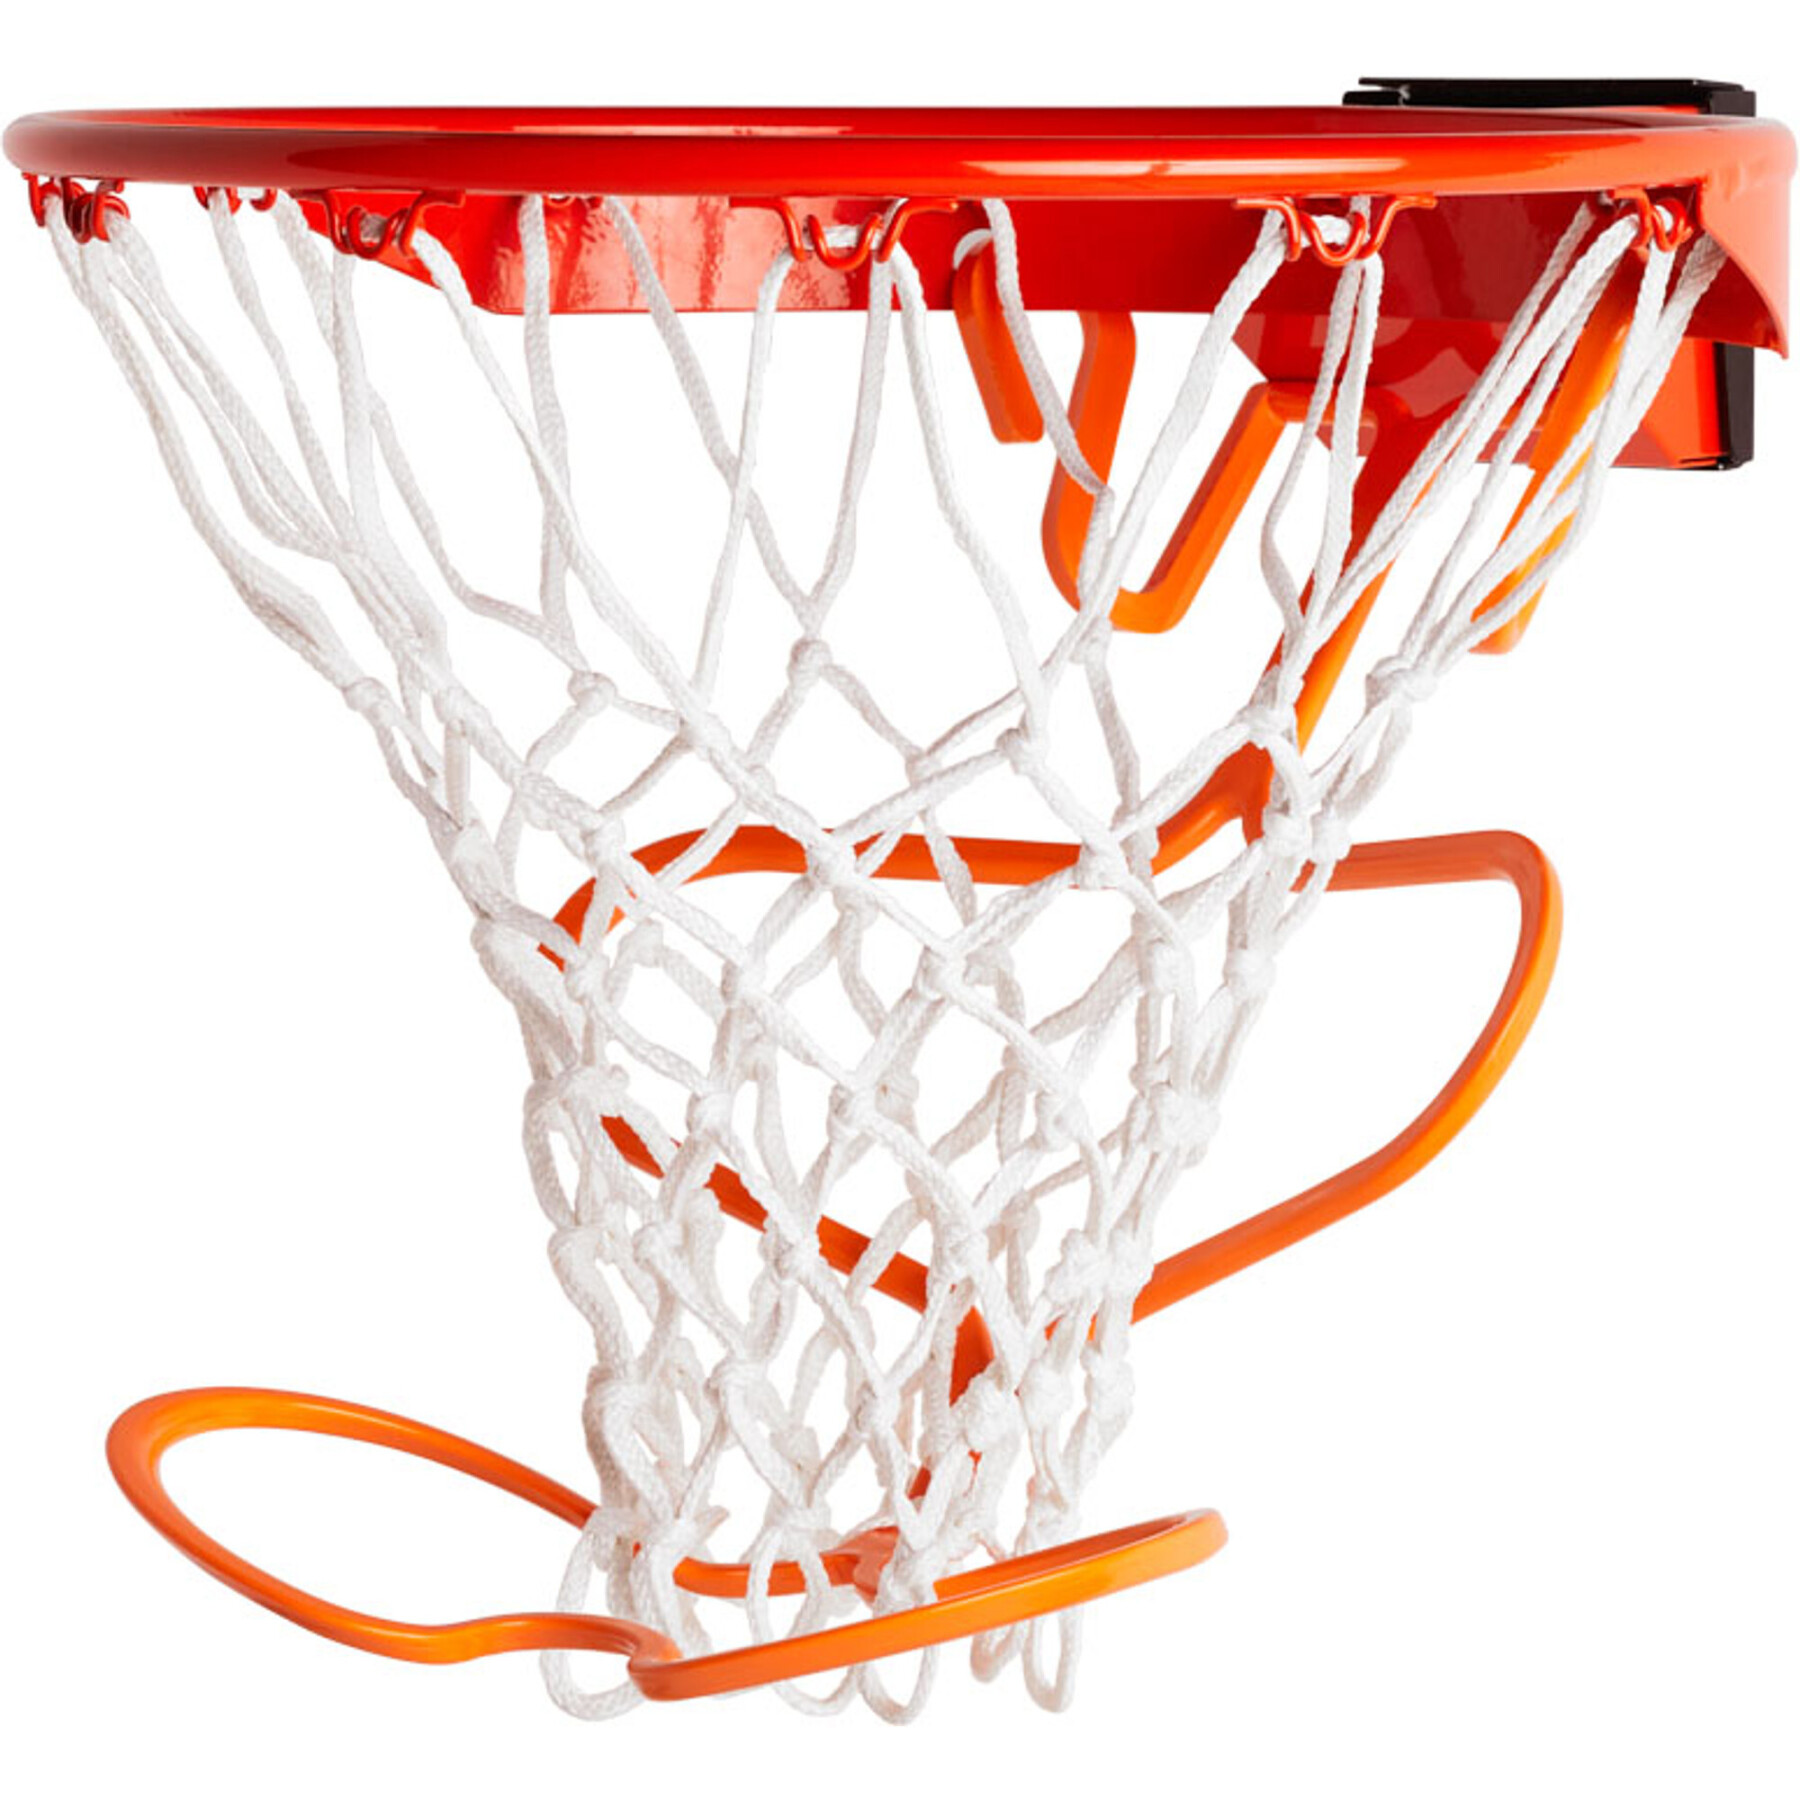 Accesorios para canastas de baloncesto Spalding Return